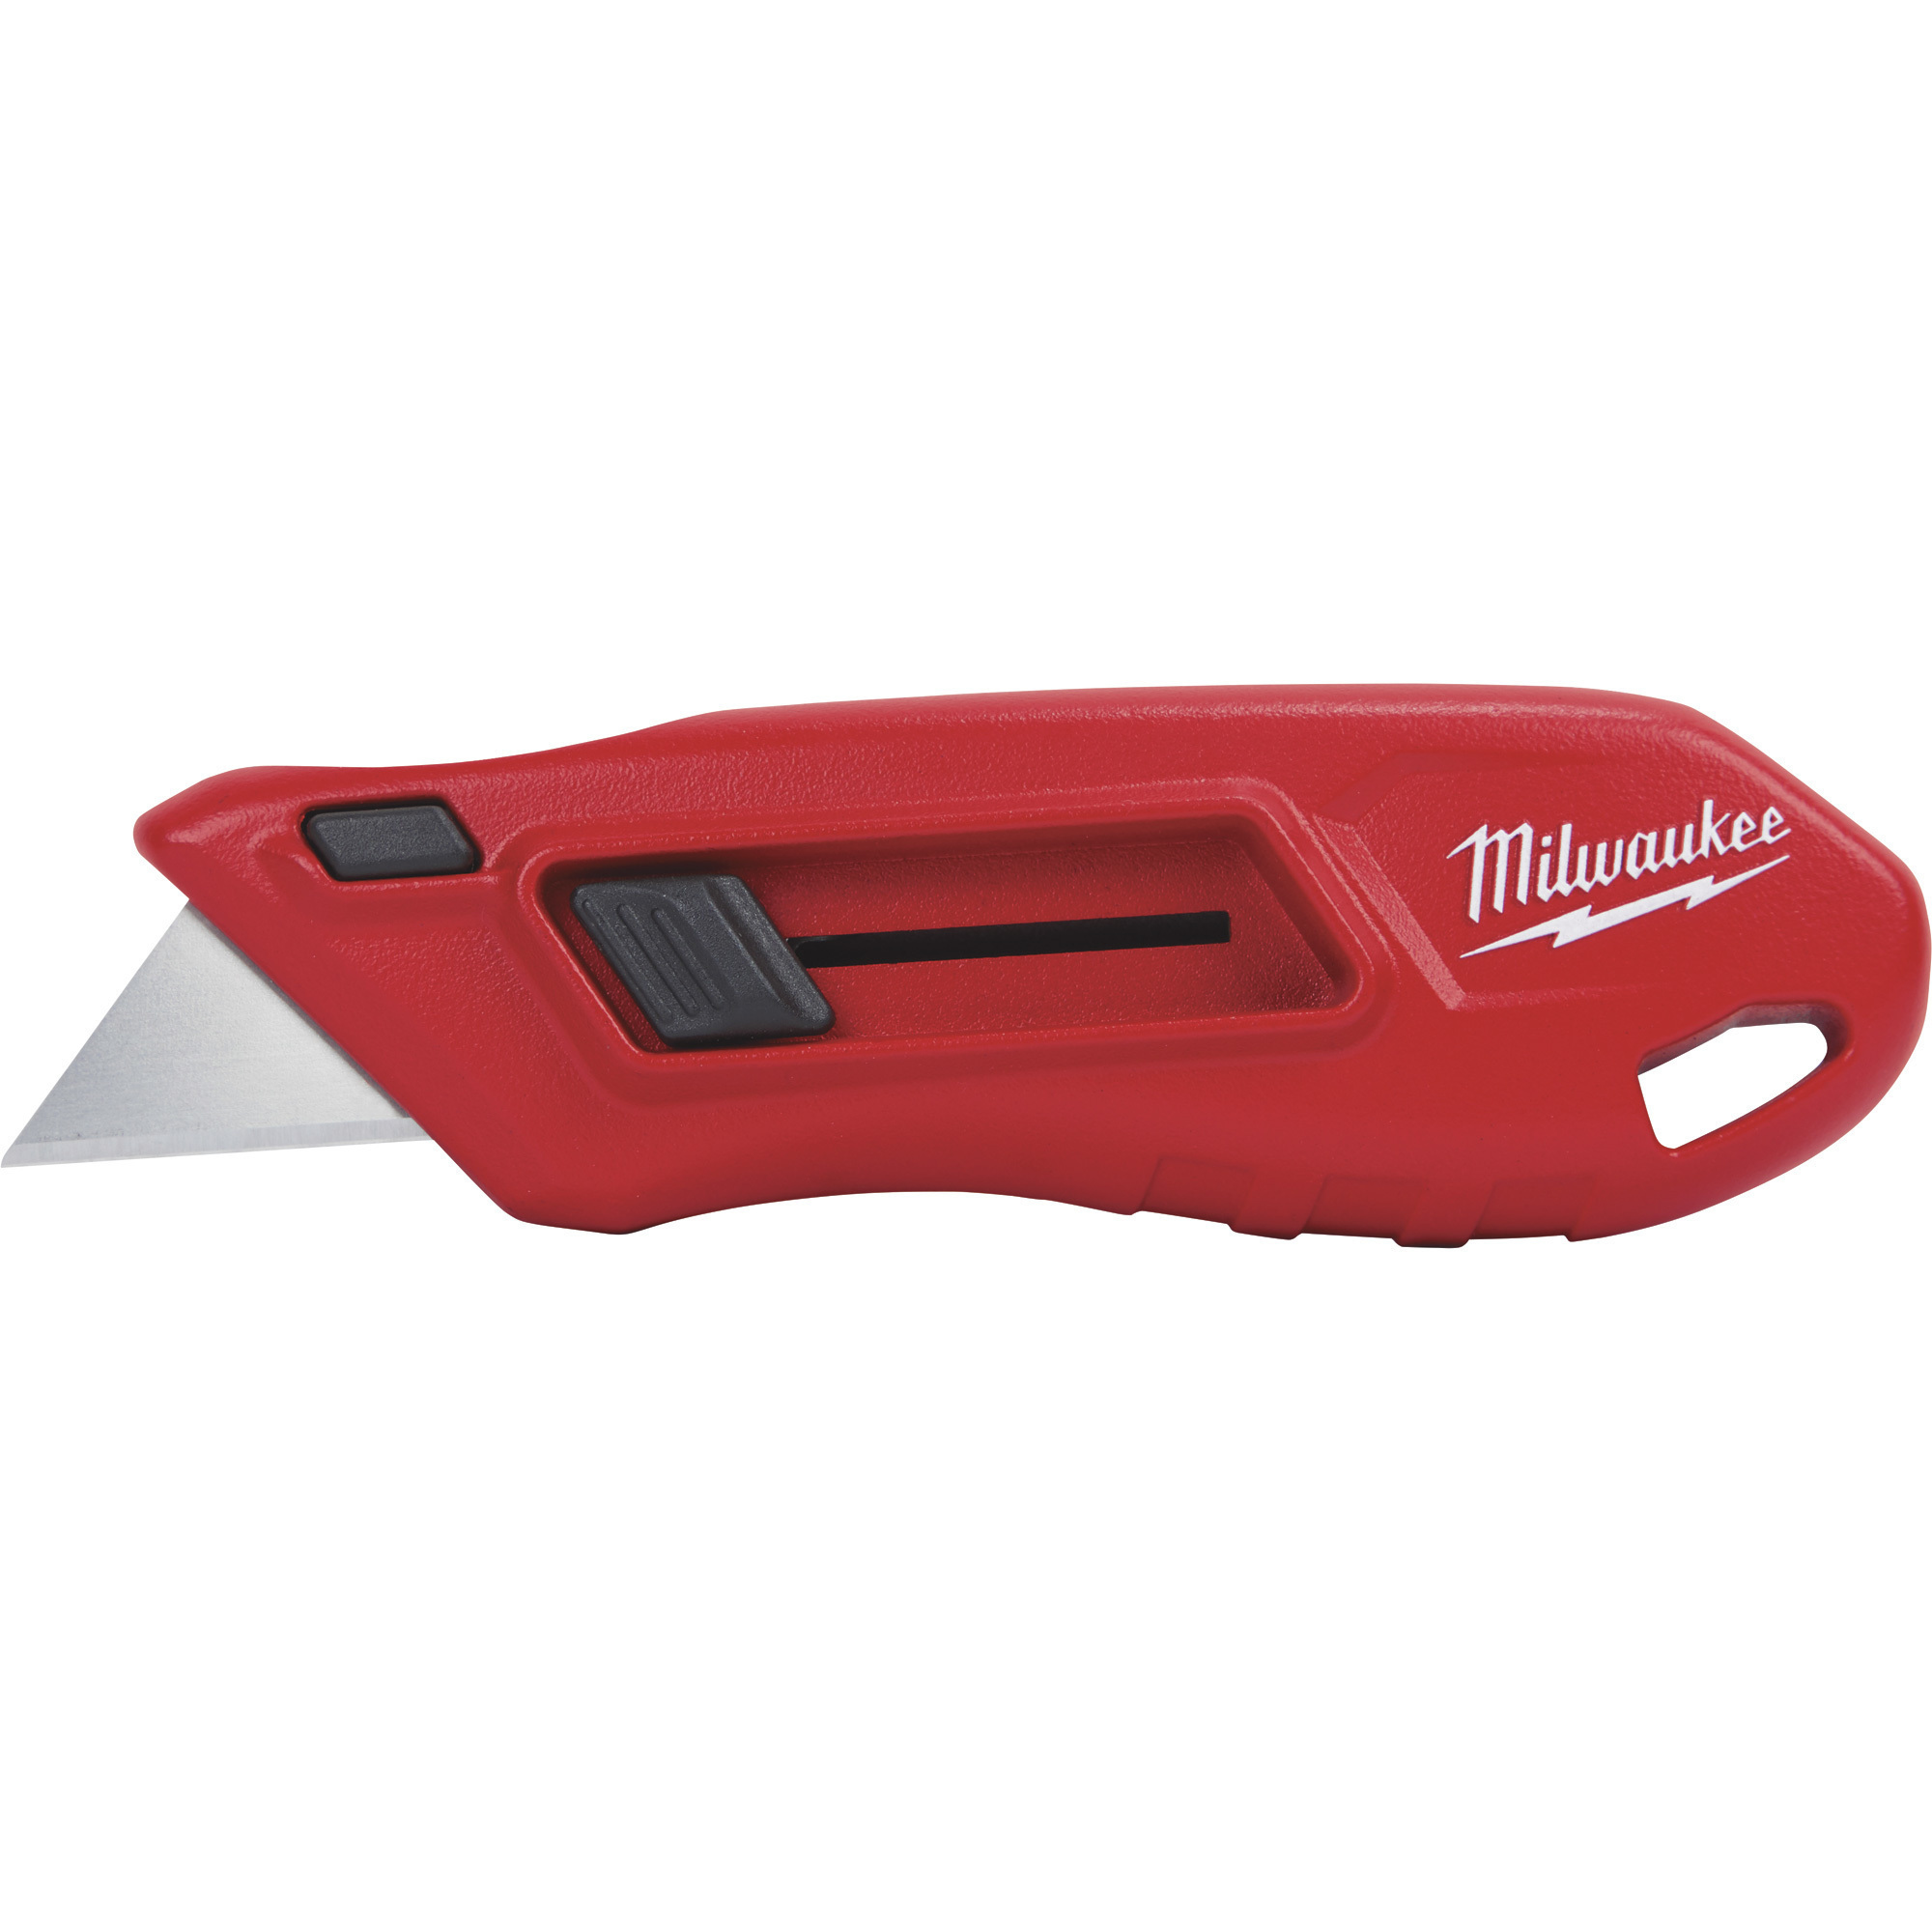 Milwaukee Compact Side Slide Utility Knife, Model 48-22-1511